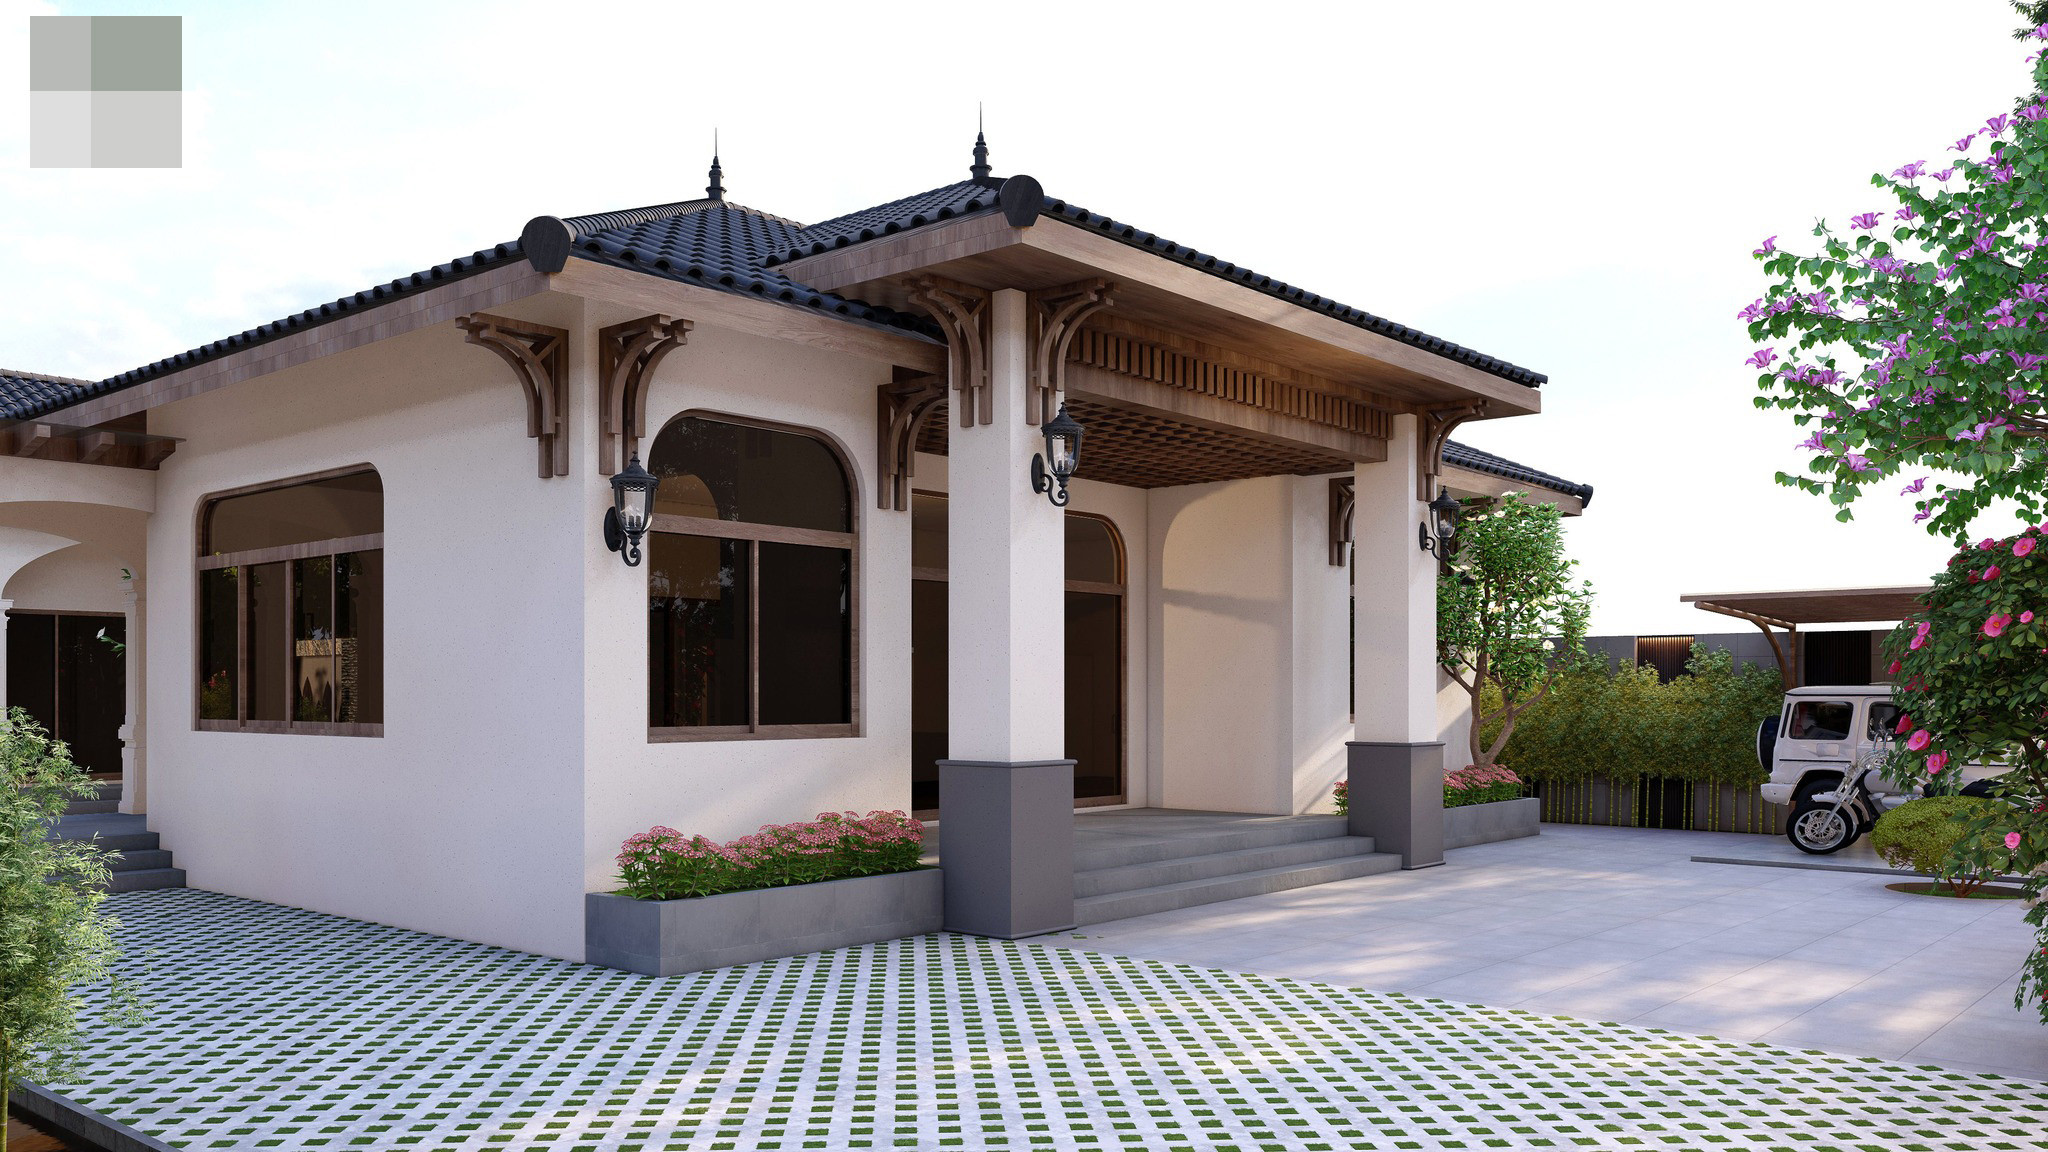 ngoi nha 625 - Ngôi nhà mang phong cách Á Đông, suối nước róc rách và phòng tắm lộ thiên